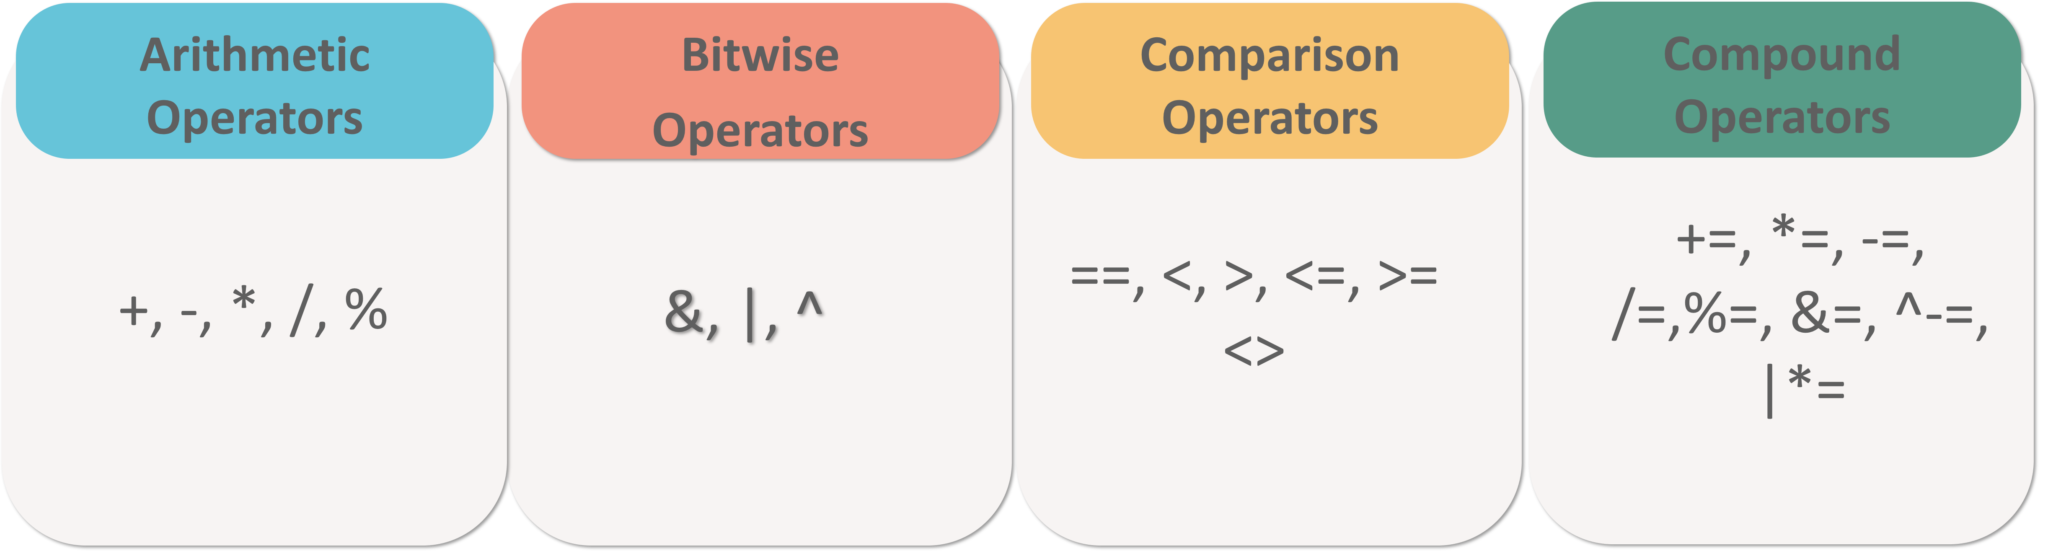 Operators1 In SQL - MySQL Operators - Edureka